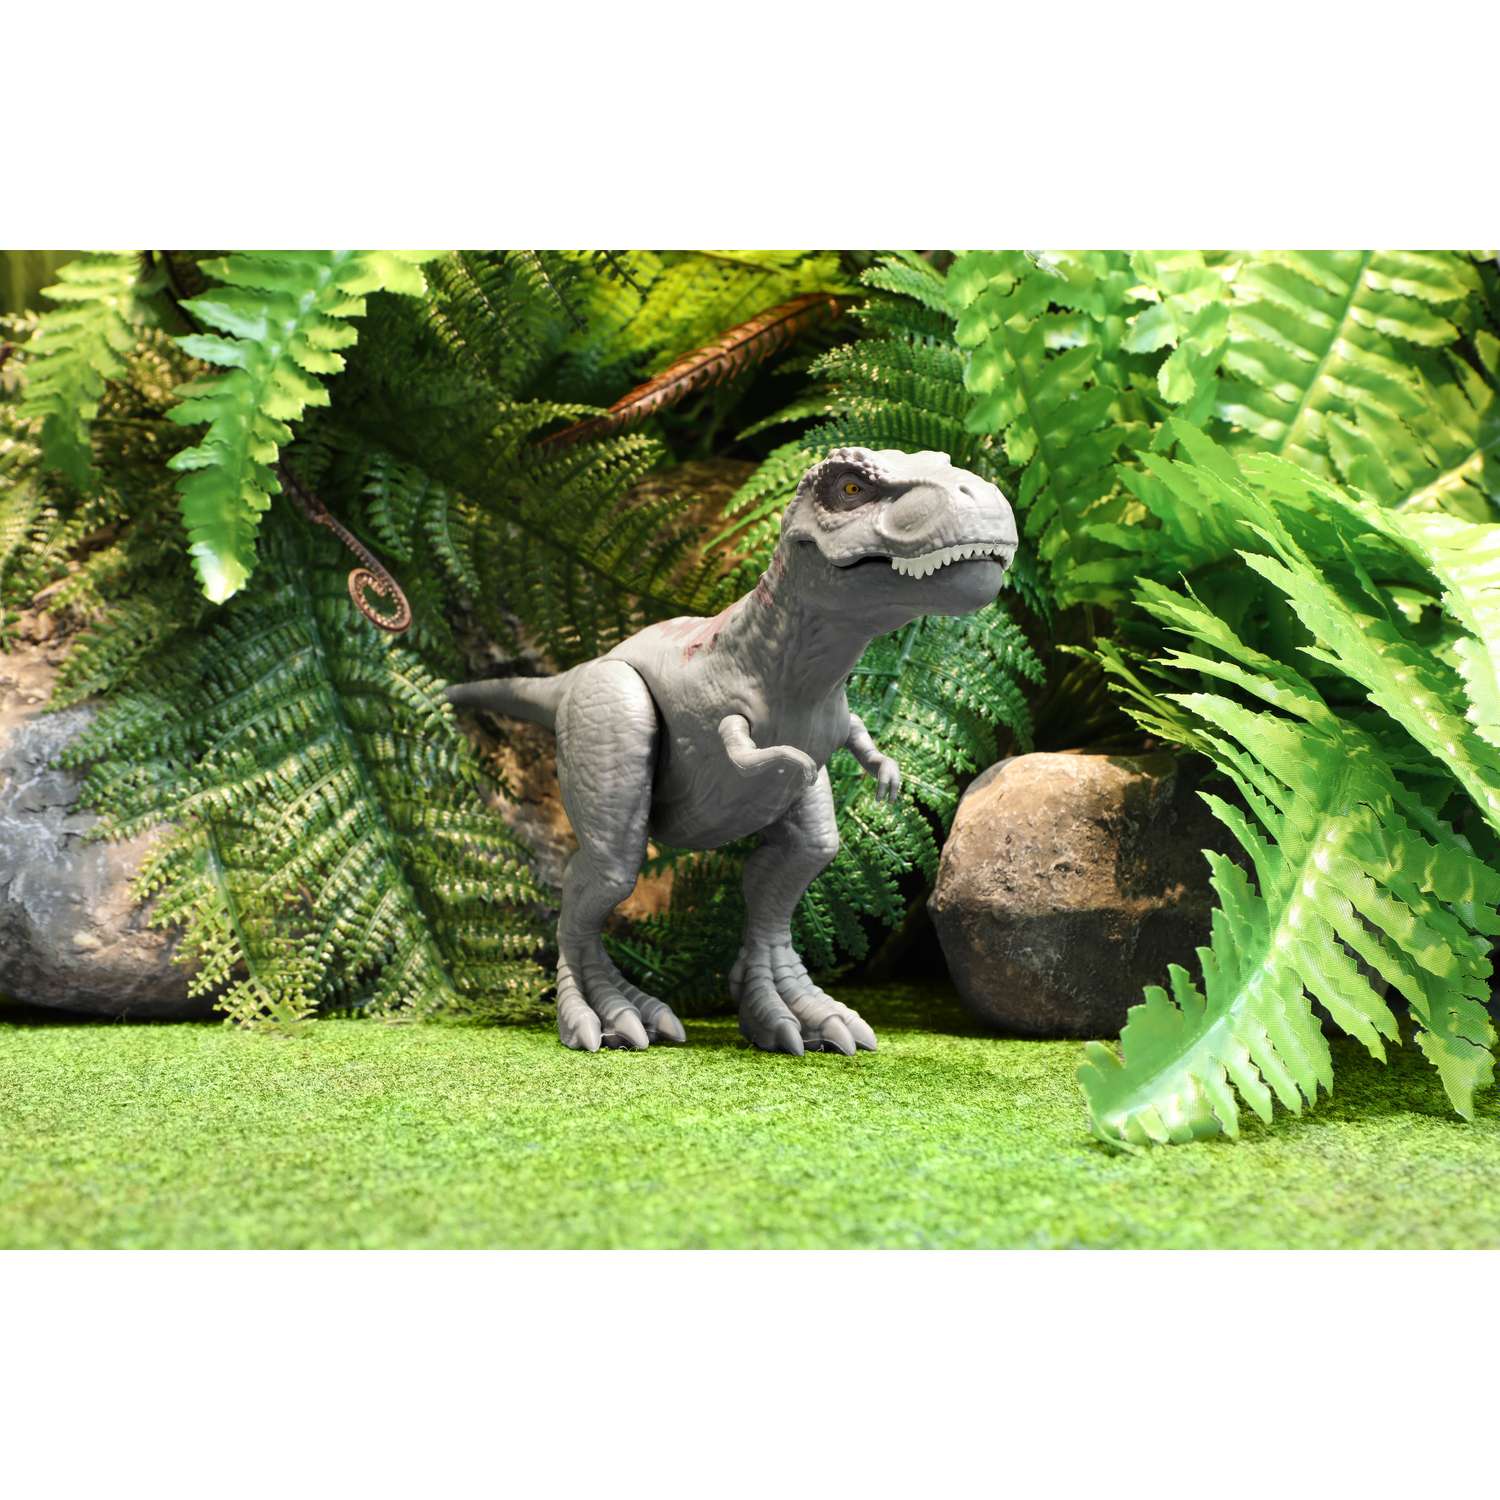 Фигурка динозавра Dinos Unleashed Т-рекс со звуковыми эффектами - фото 2